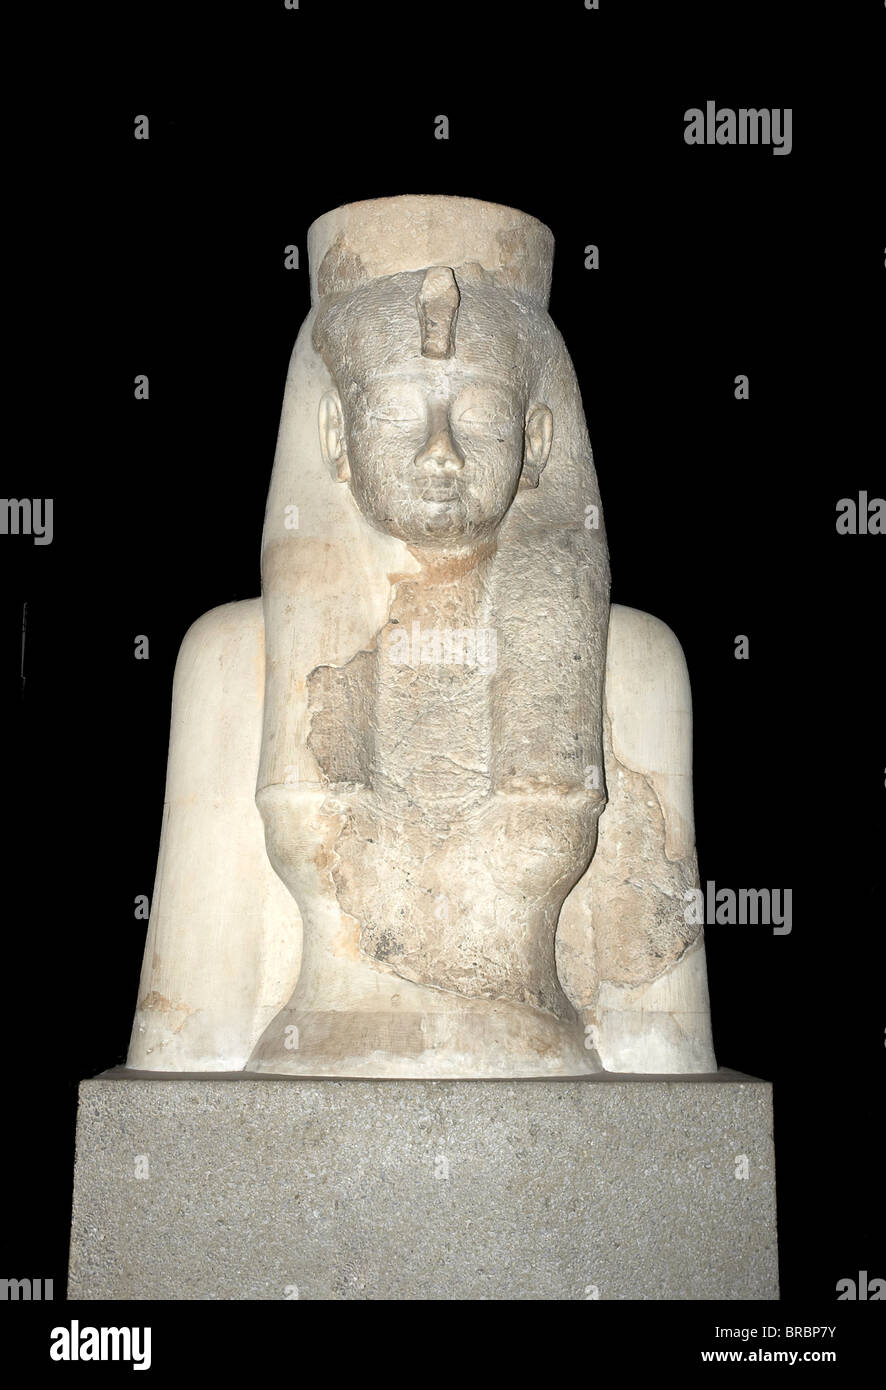 La Statue de pharaon égyptien dans un musée à Londres, Angleterre Banque D'Images